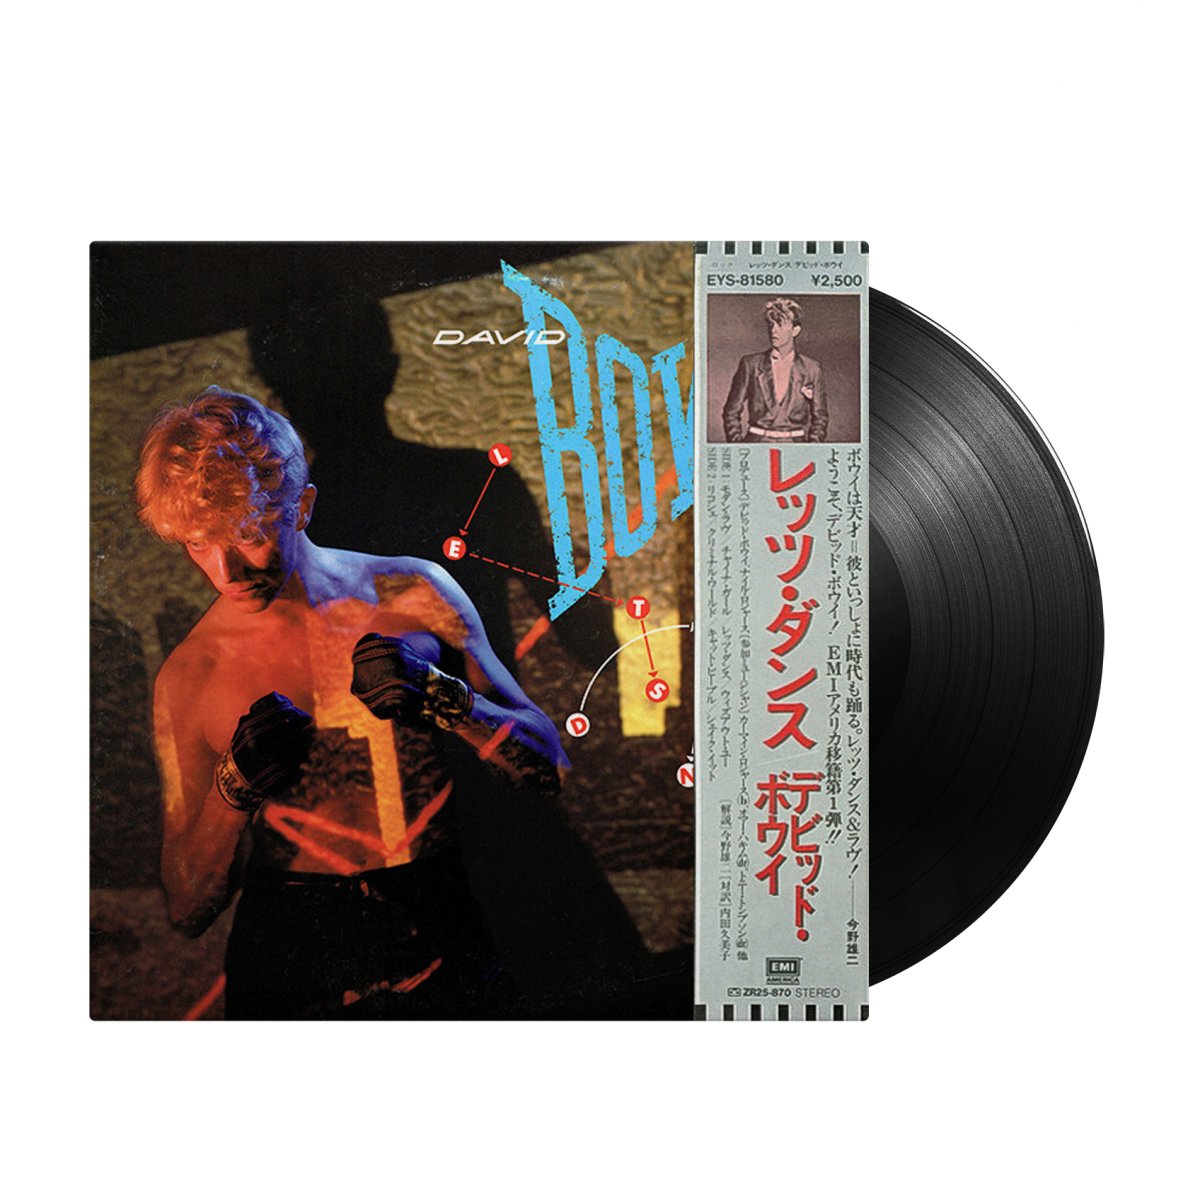 David Bowie - Let's Dance (Japan Import)